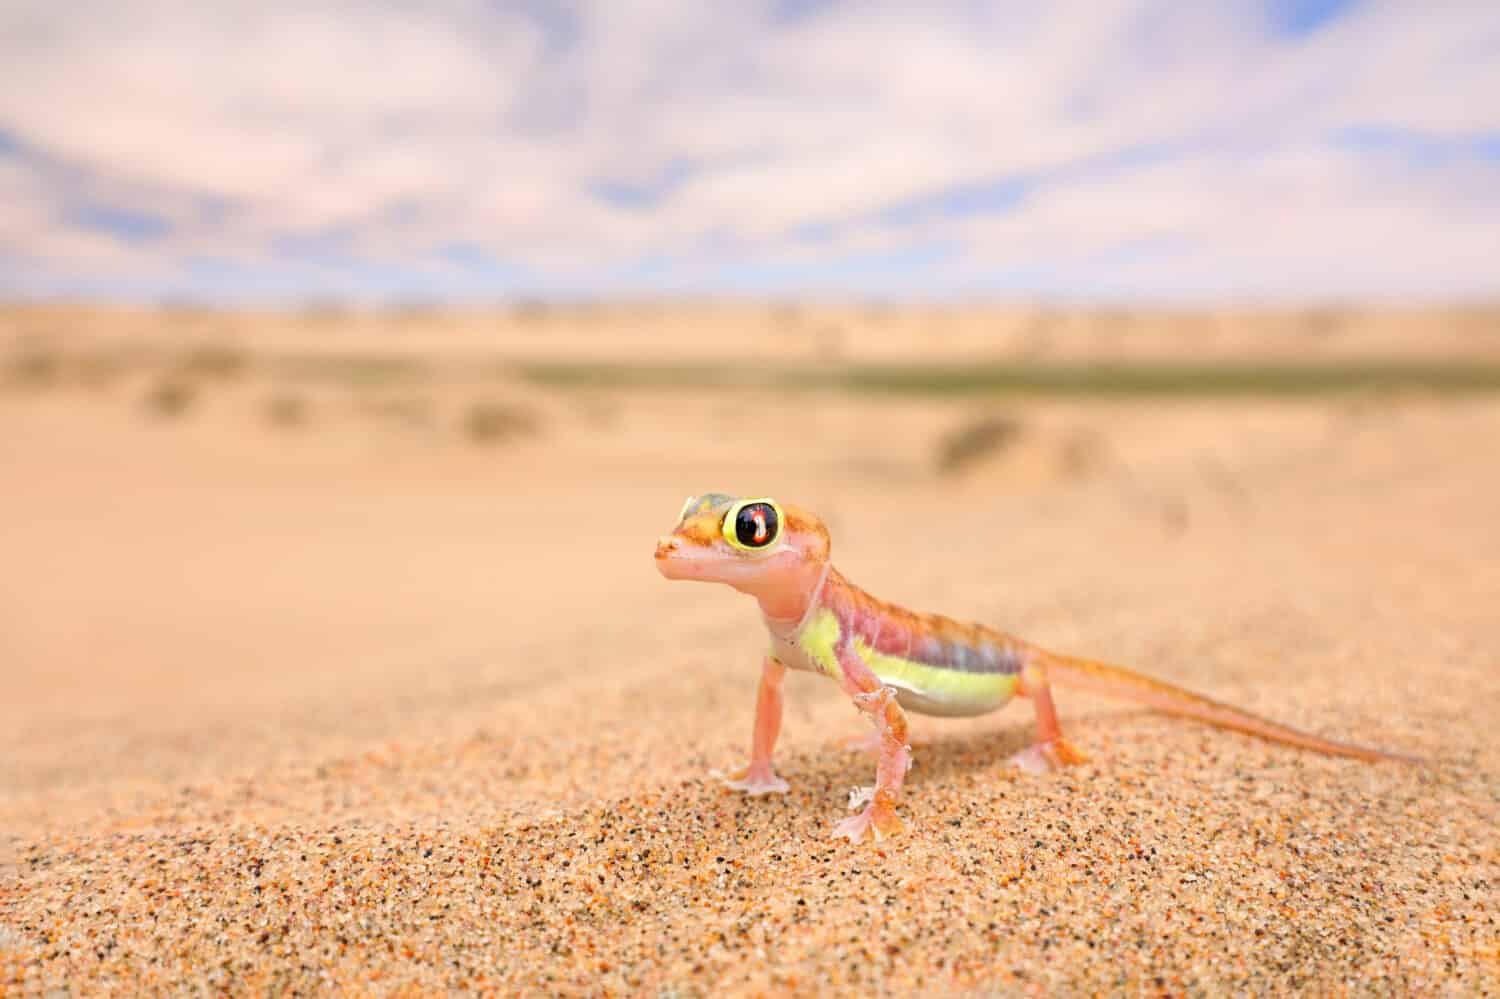 Geco dalla duna di sabbia del Namib, Namibia.  Pachydactylus rangei, geco palmato dai piedi palmati nell'habitat naturale del deserto.  Lucertola nel deserto del Namib con cielo blu con nuvole, grandangolo.  Natura della fauna selvatica.